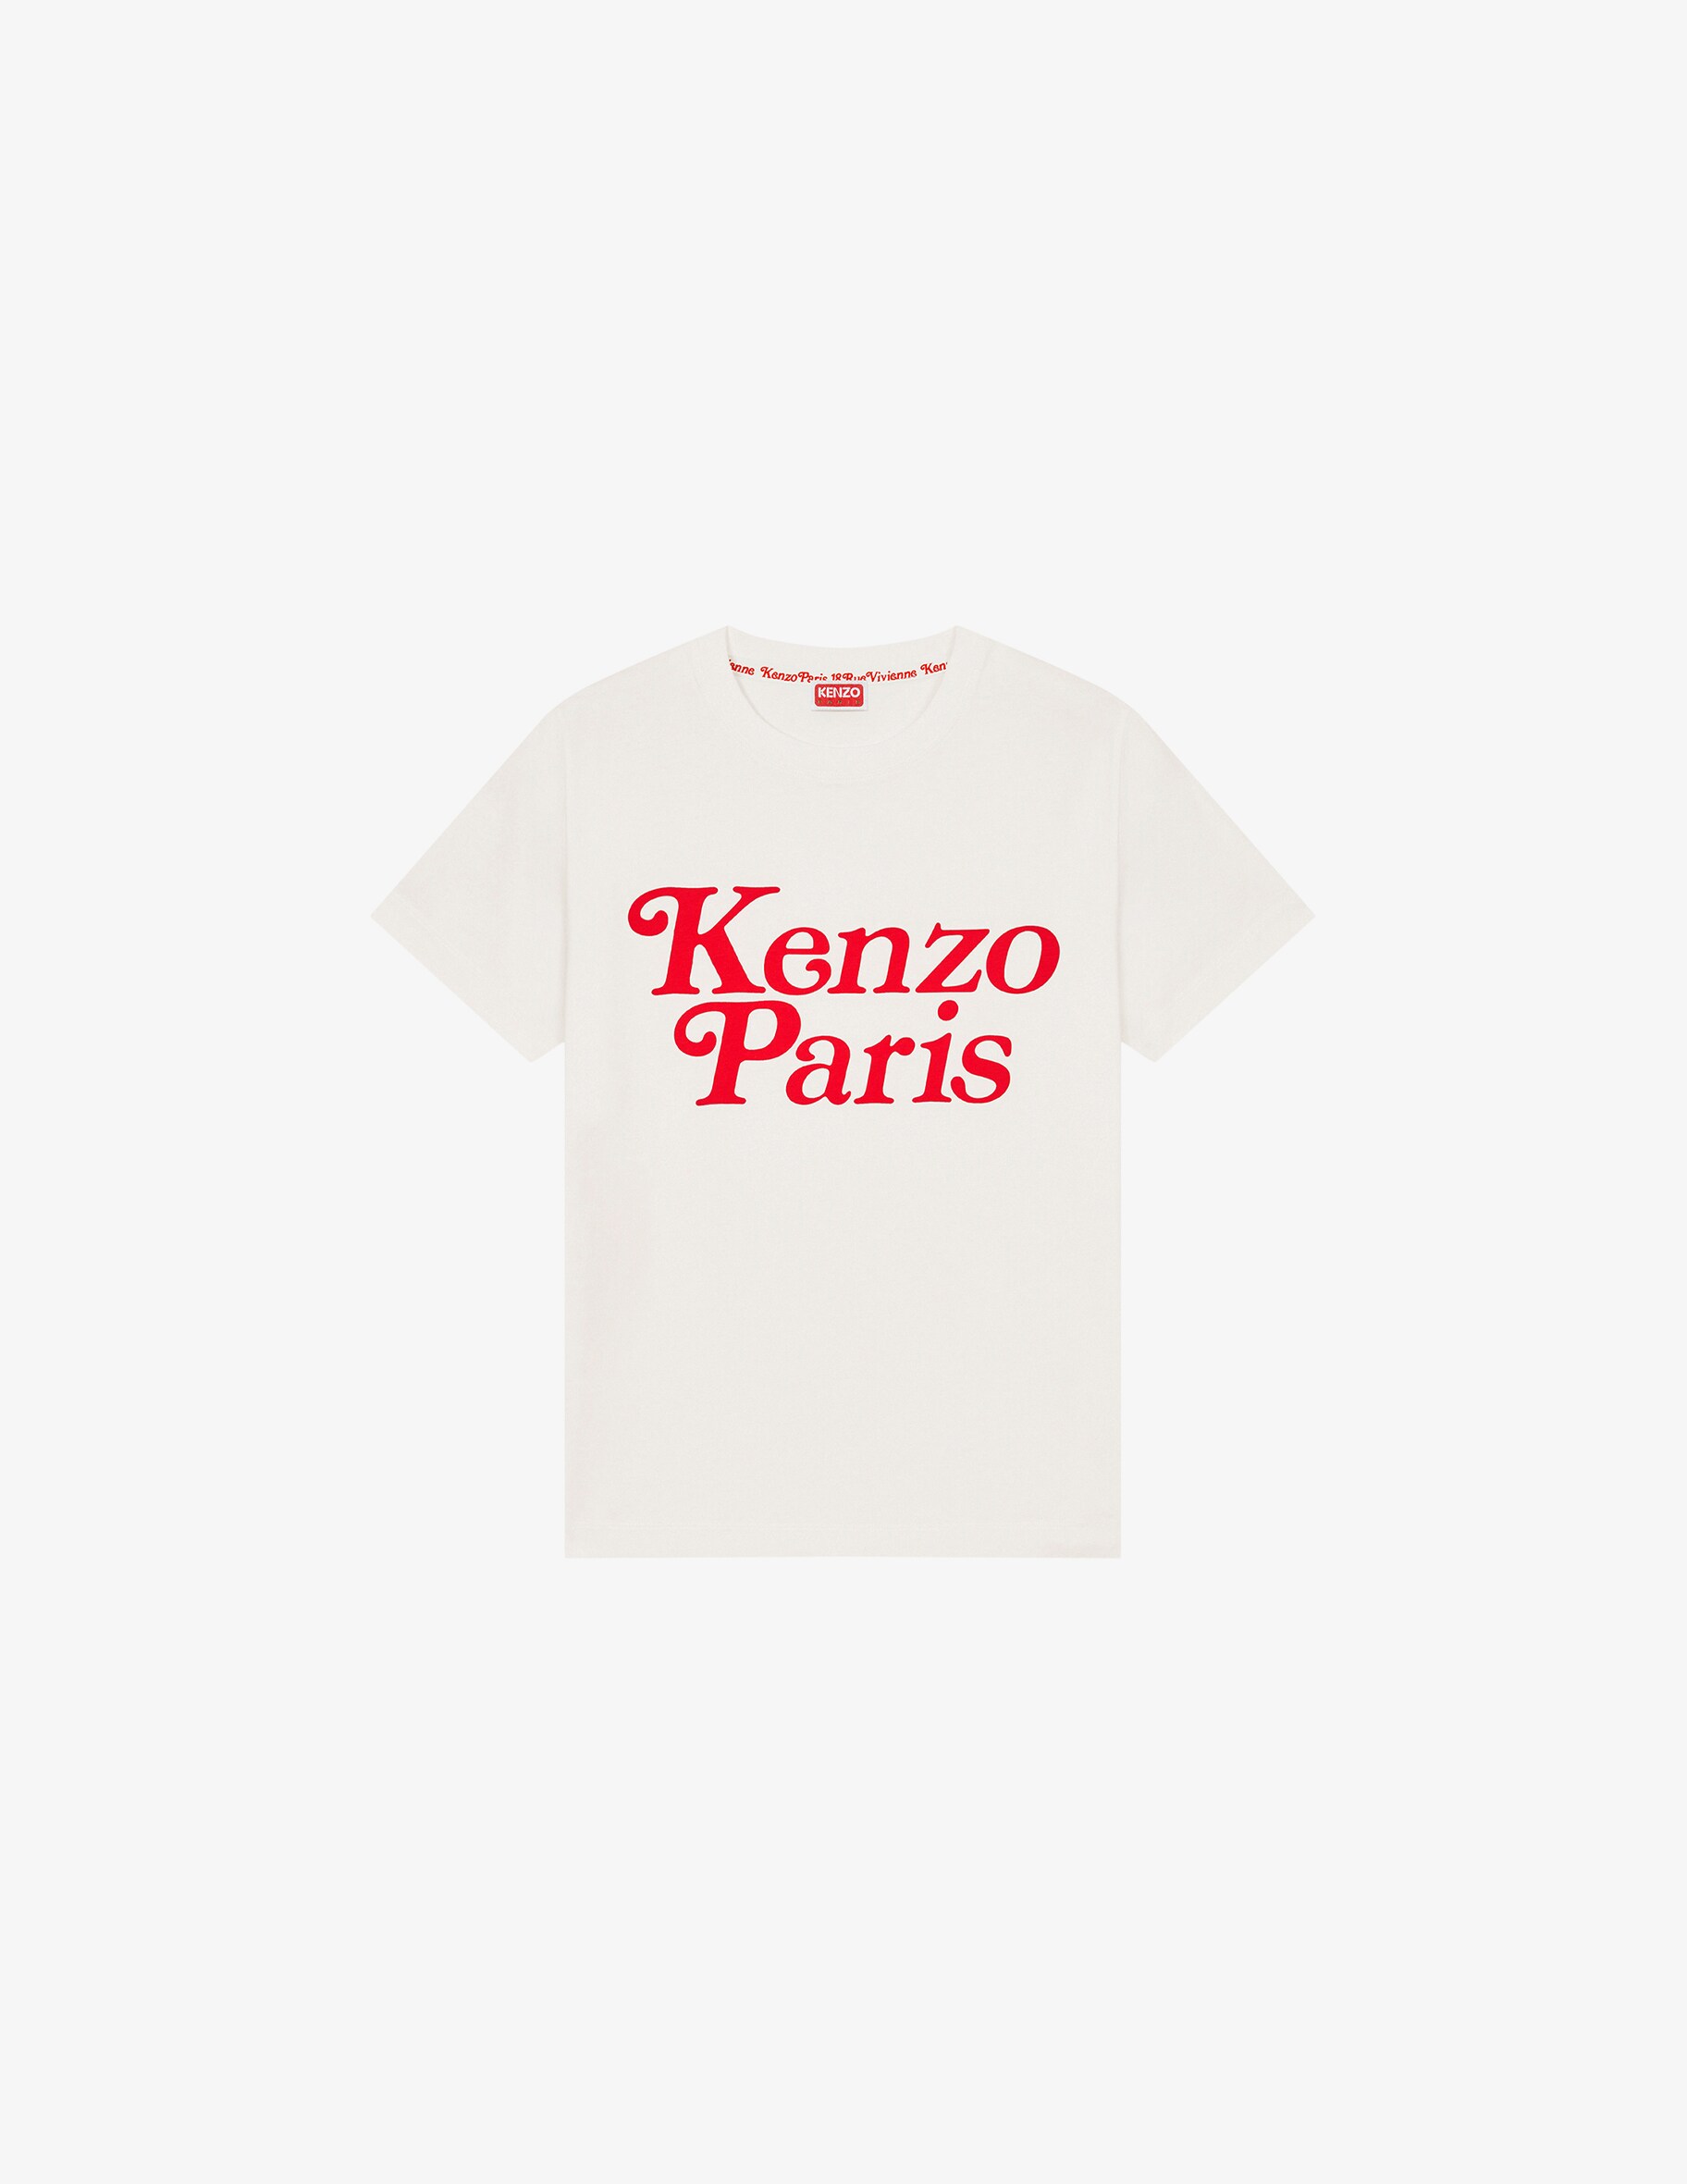 Свободная футболка Kenzo by Verdy Kenzo, белый